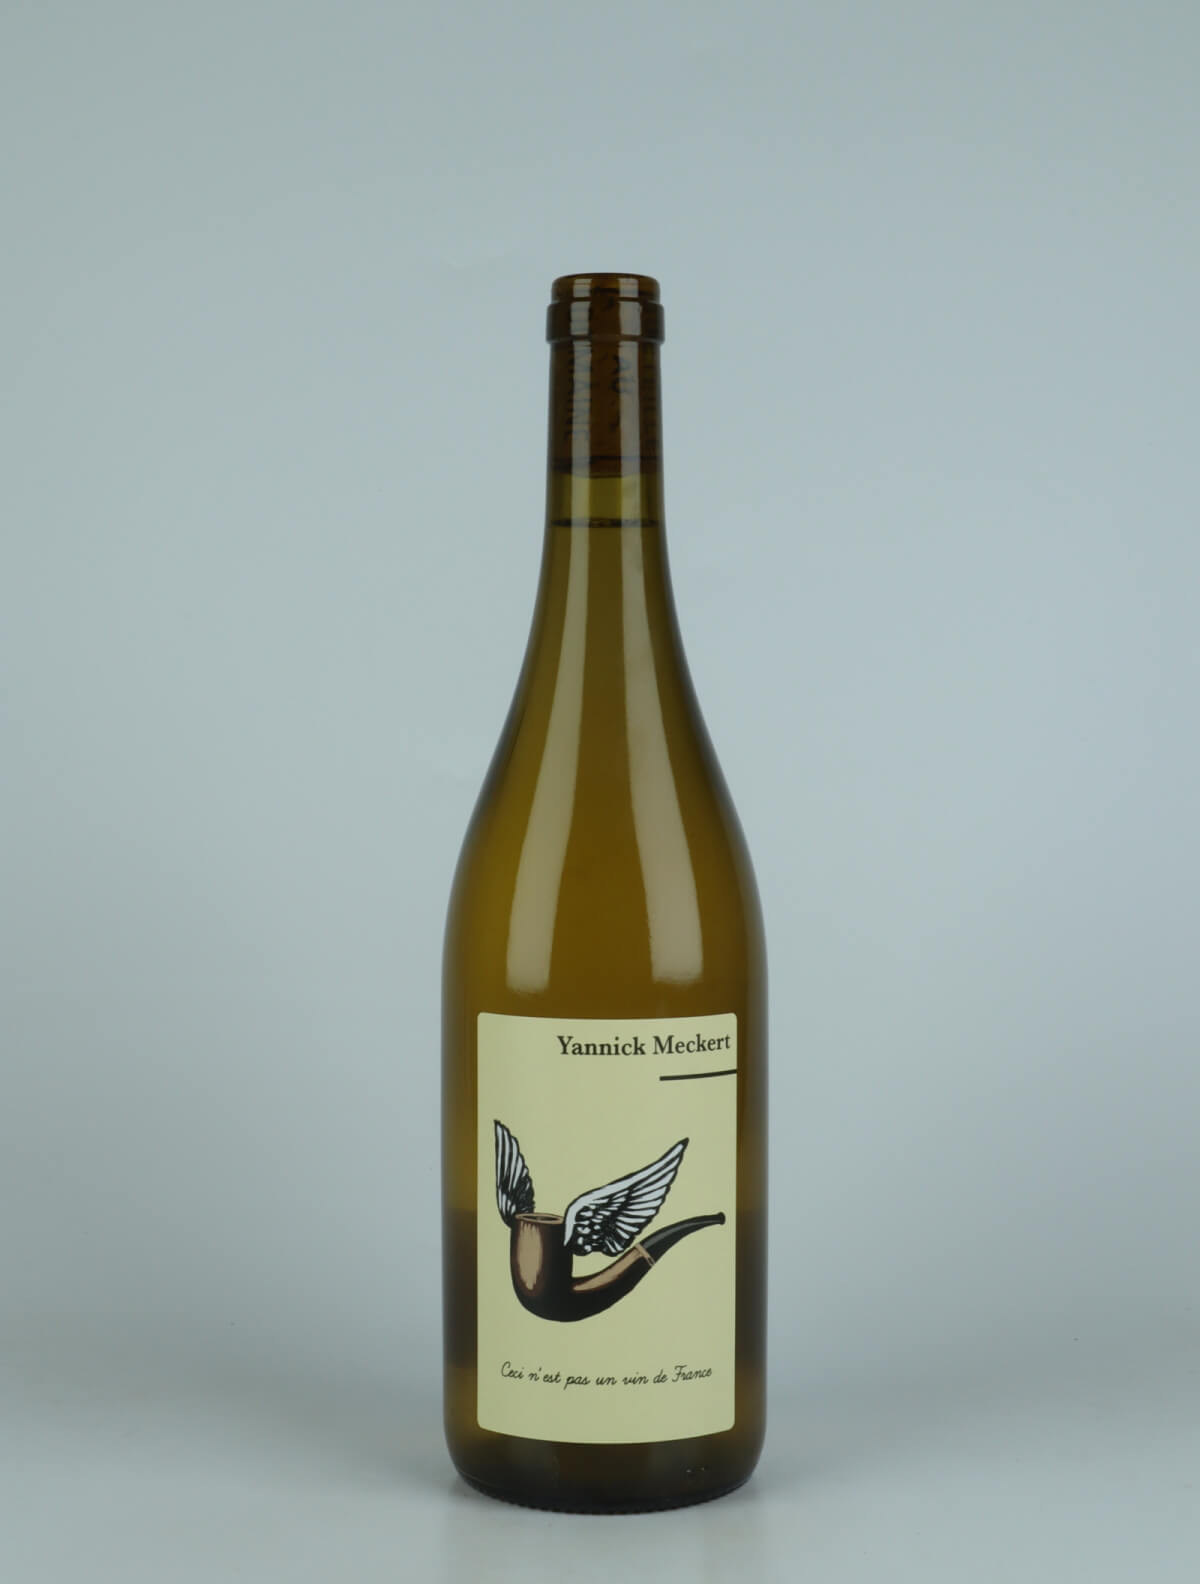 En flaske 2022 Ceci N'est Pas un Vin de France Hvidvin fra Yannick Meckert, Alsace i Frankrig